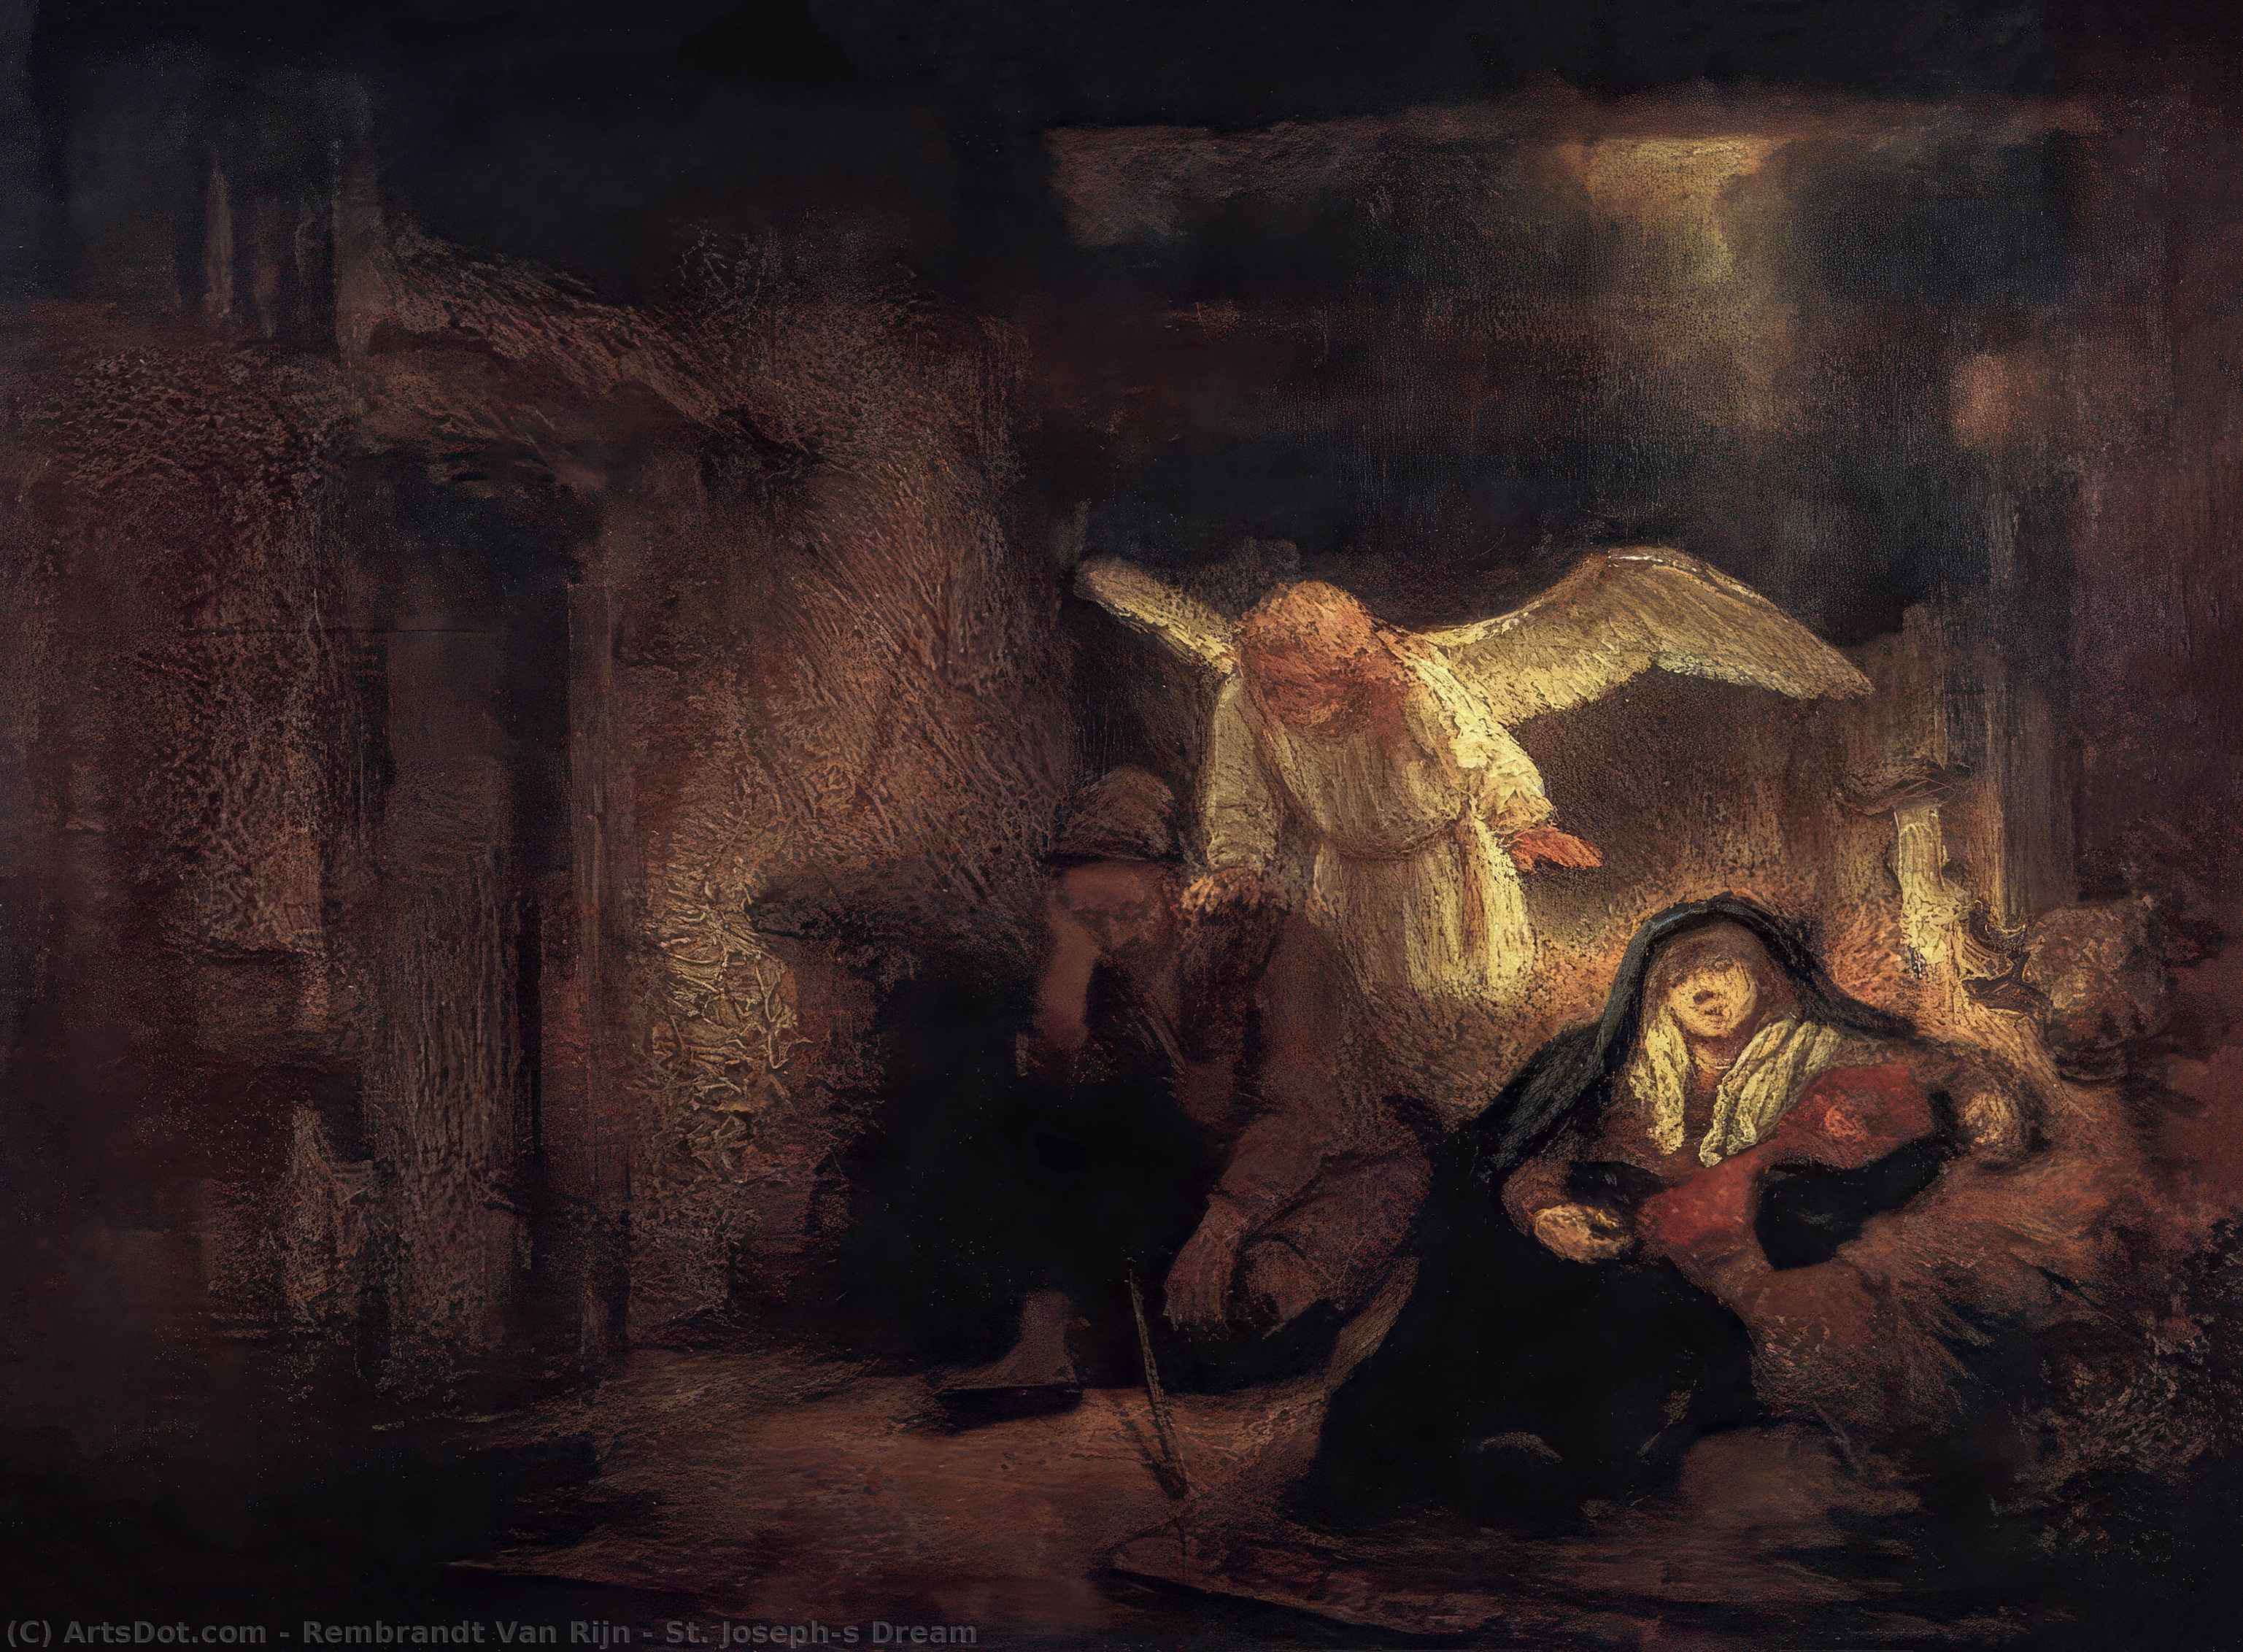 WikiOO.org - אנציקלופדיה לאמנויות יפות - ציור, יצירות אמנות Rembrandt Van Rijn - St. Joseph's Dream